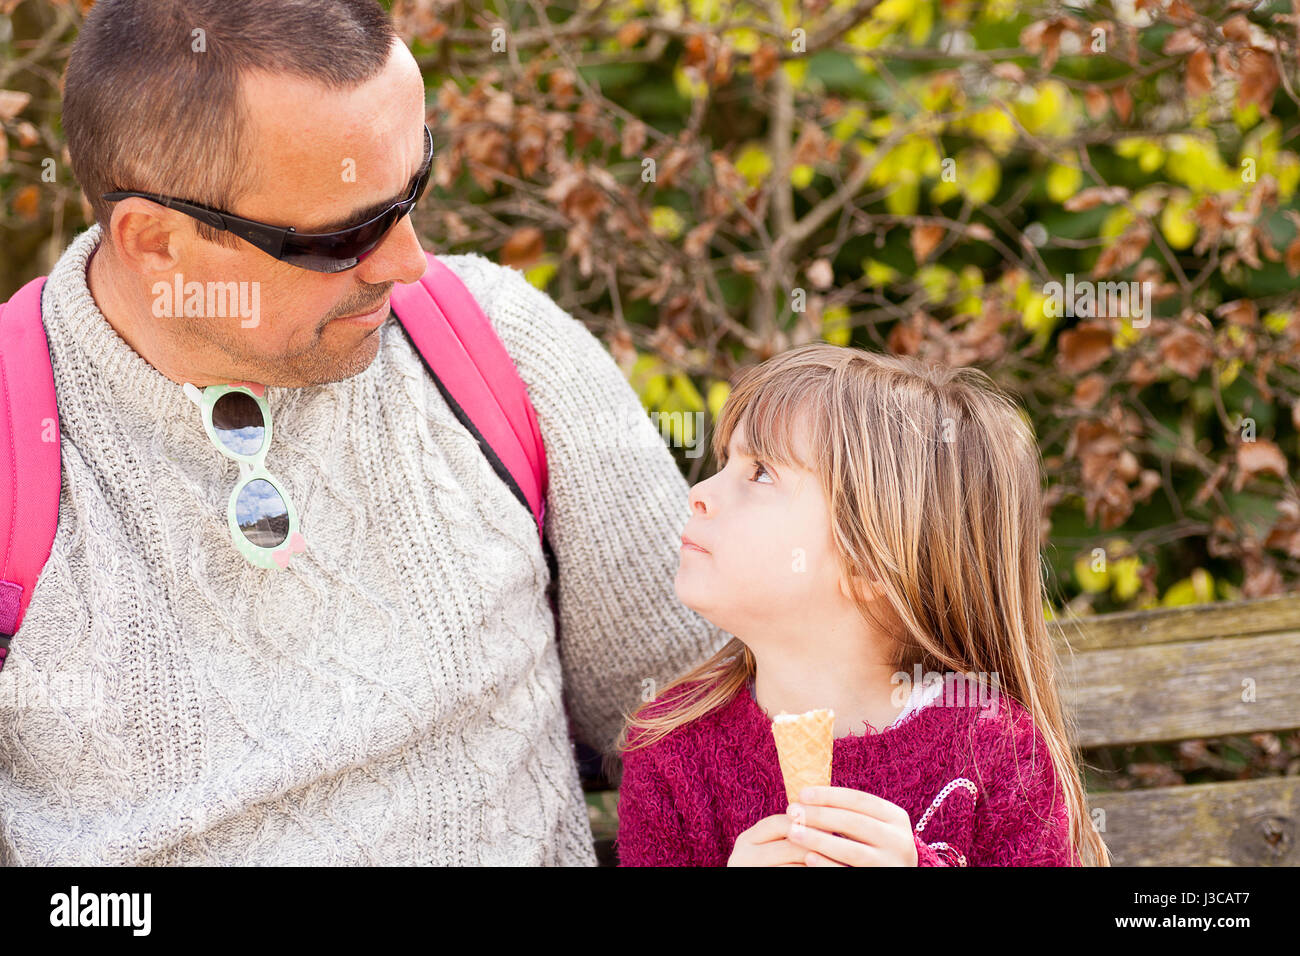 Personas reales. El hombre y la niña mirando el uno al otro. Padre e hija disfrutando de tiempo de calidad al aire libre con helado. Cándido retrato de familia. Foto de stock